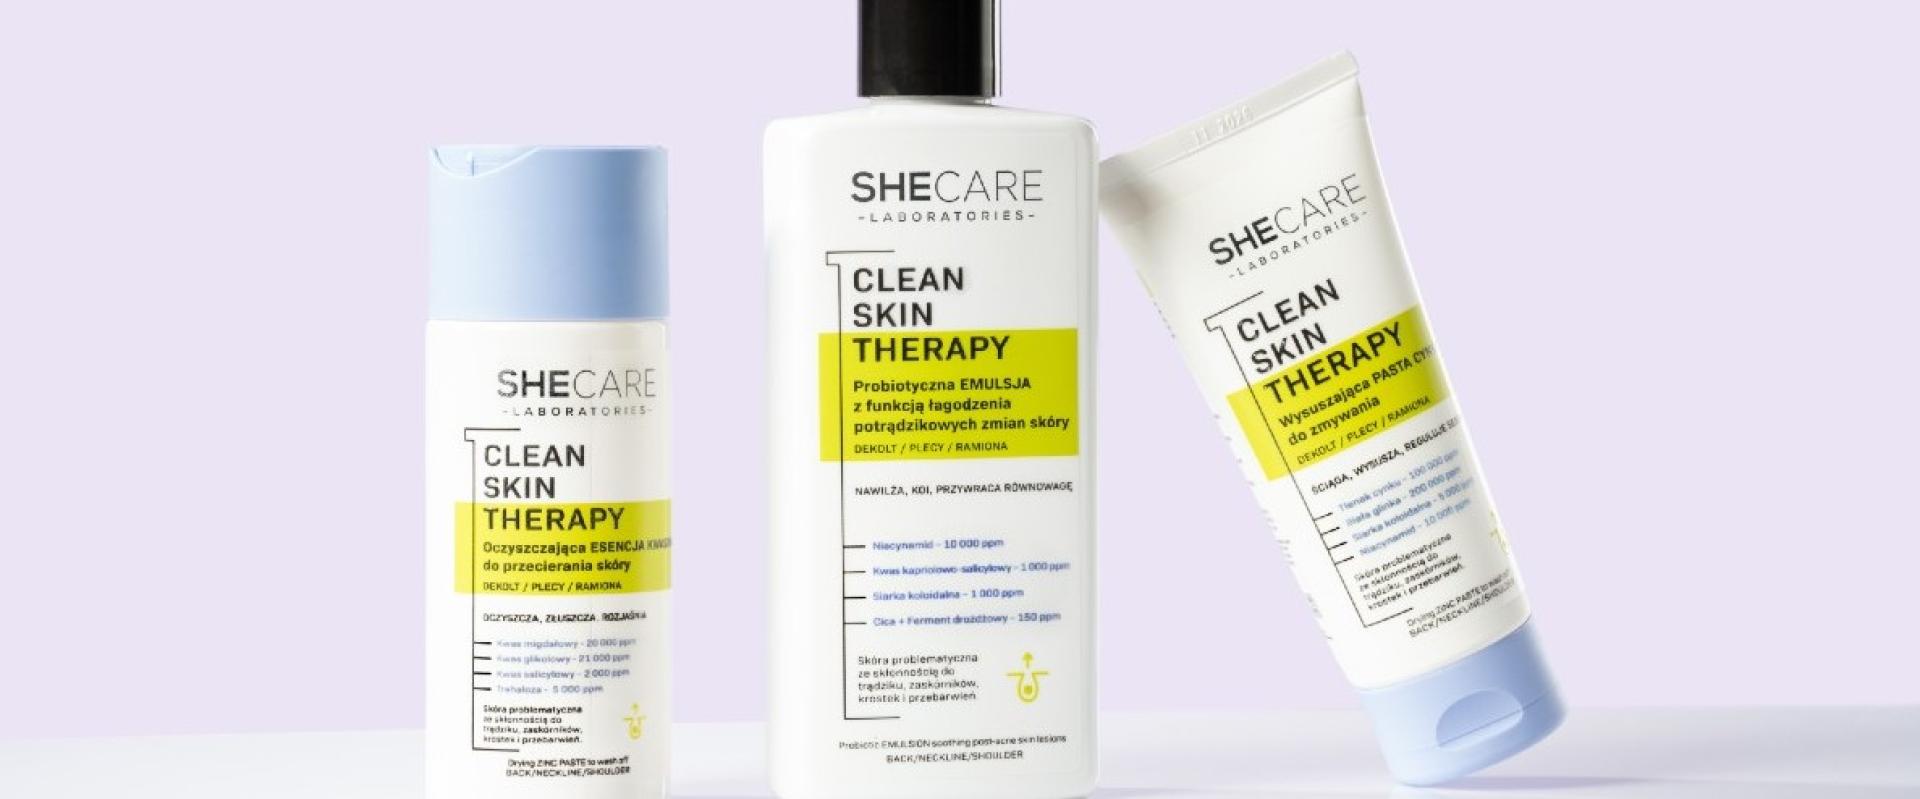 CLEAN SKIN THERAPY nowość od marki SHECARE, która poradzi sobie z problemem trądziku i przebarwień potrądzikowych